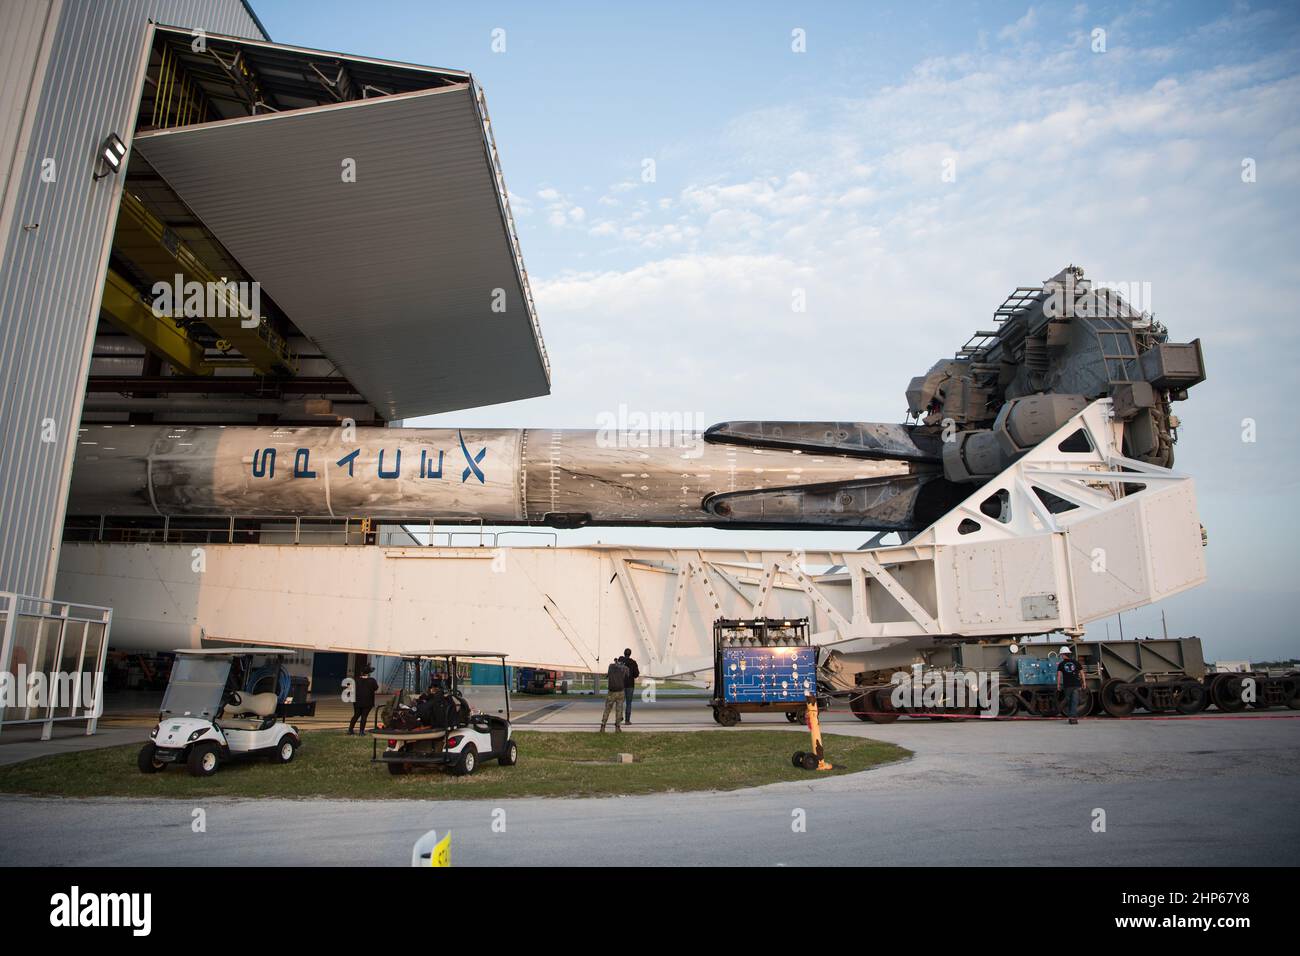 Une fusée SpaceX Falcon 9 à bord du vaisseau spatial Crew Dragon de la société est considérée comme déployée à partir de l'installation d'intégration horizontale au complexe Launch 39A alors que les préparatifs se poursuivent pour la mission Crew-2, le vendredi 16 avril 2021, au Kennedy Space Center de la NASA en Floride. La mission SpaceX Crew-2 de la NASA est la deuxième mission de rotation d’équipage du vaisseau spatial SpaceX Crew Dragon et de la fusée Falcon 9 à destination de la Station spatiale internationale dans le cadre du programme d’équipage commercial de l’agence. Banque D'Images